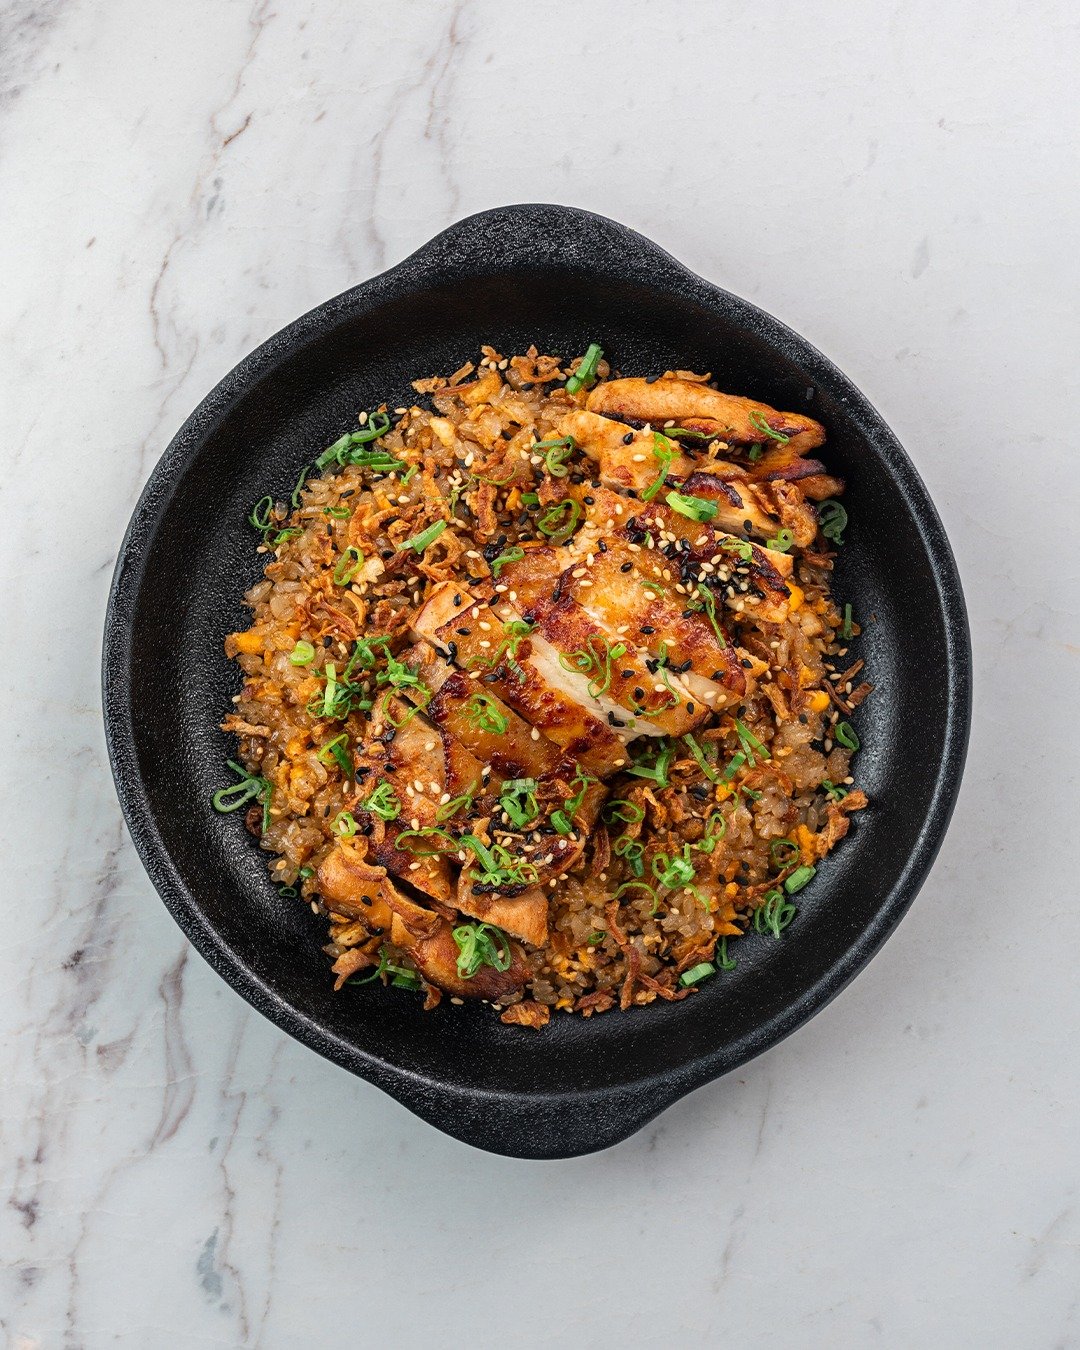 Savoring every bite of this Chicken Fried Rice.

Reservations: +971 54 295 6504

#notonlyfishdubai #panasian #dubairestaurants #jlt